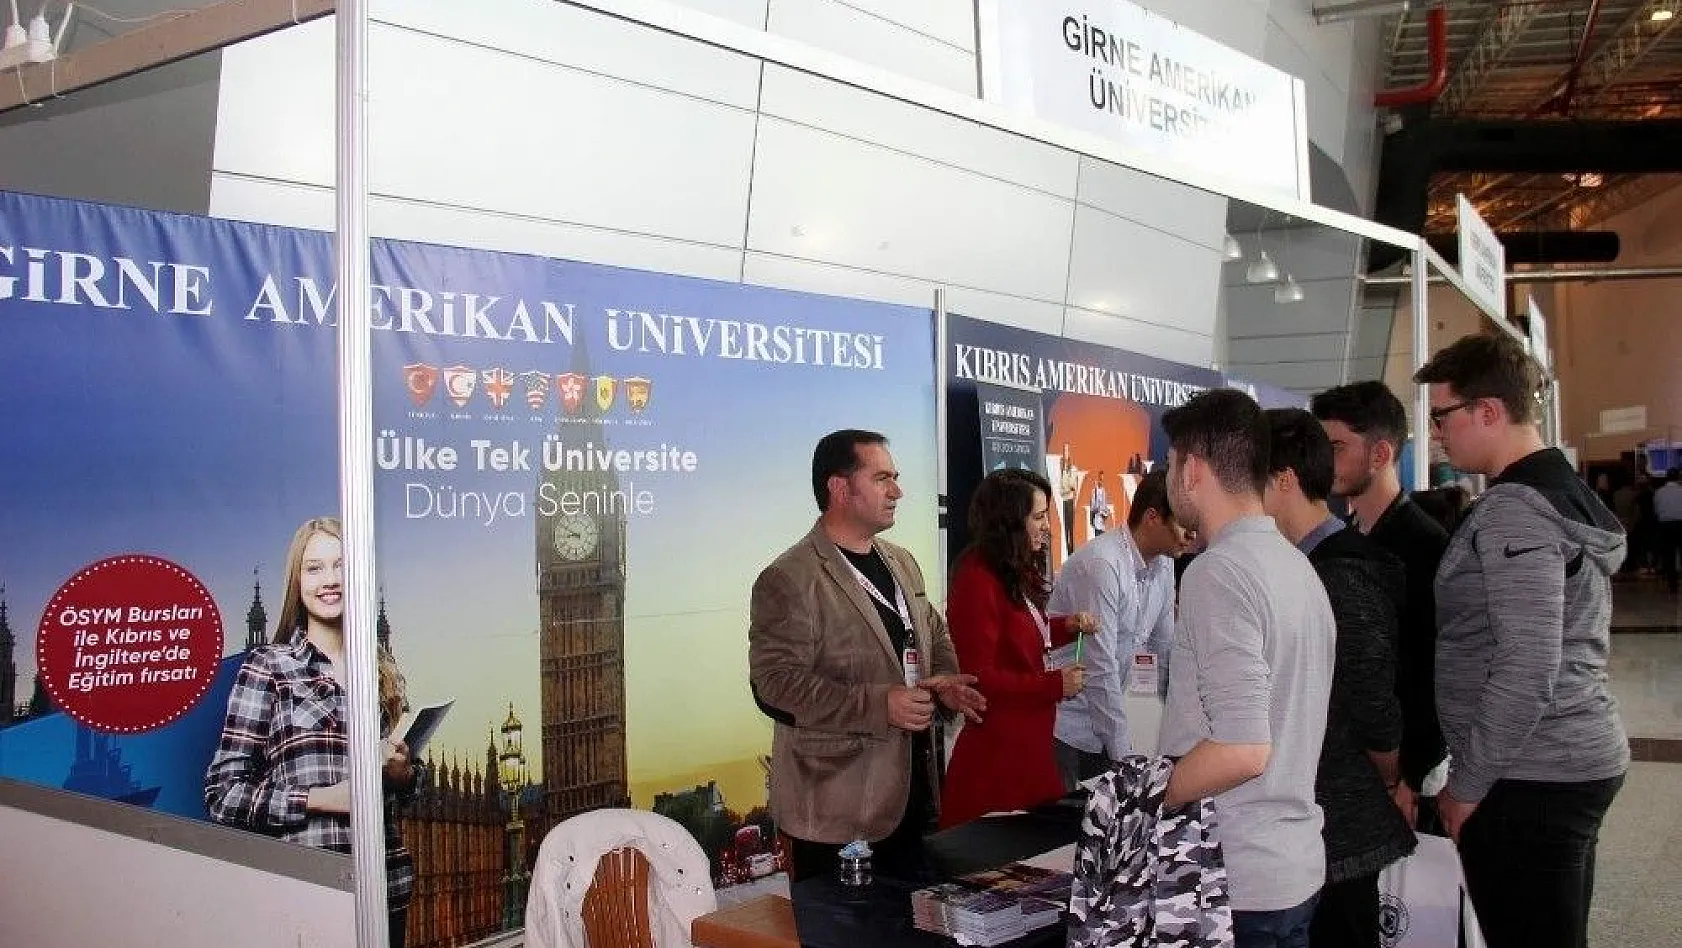 Girne ve Kıbrıs Amerikan Üniversiteleri Kayseri'de öğrencilerle buluştu
